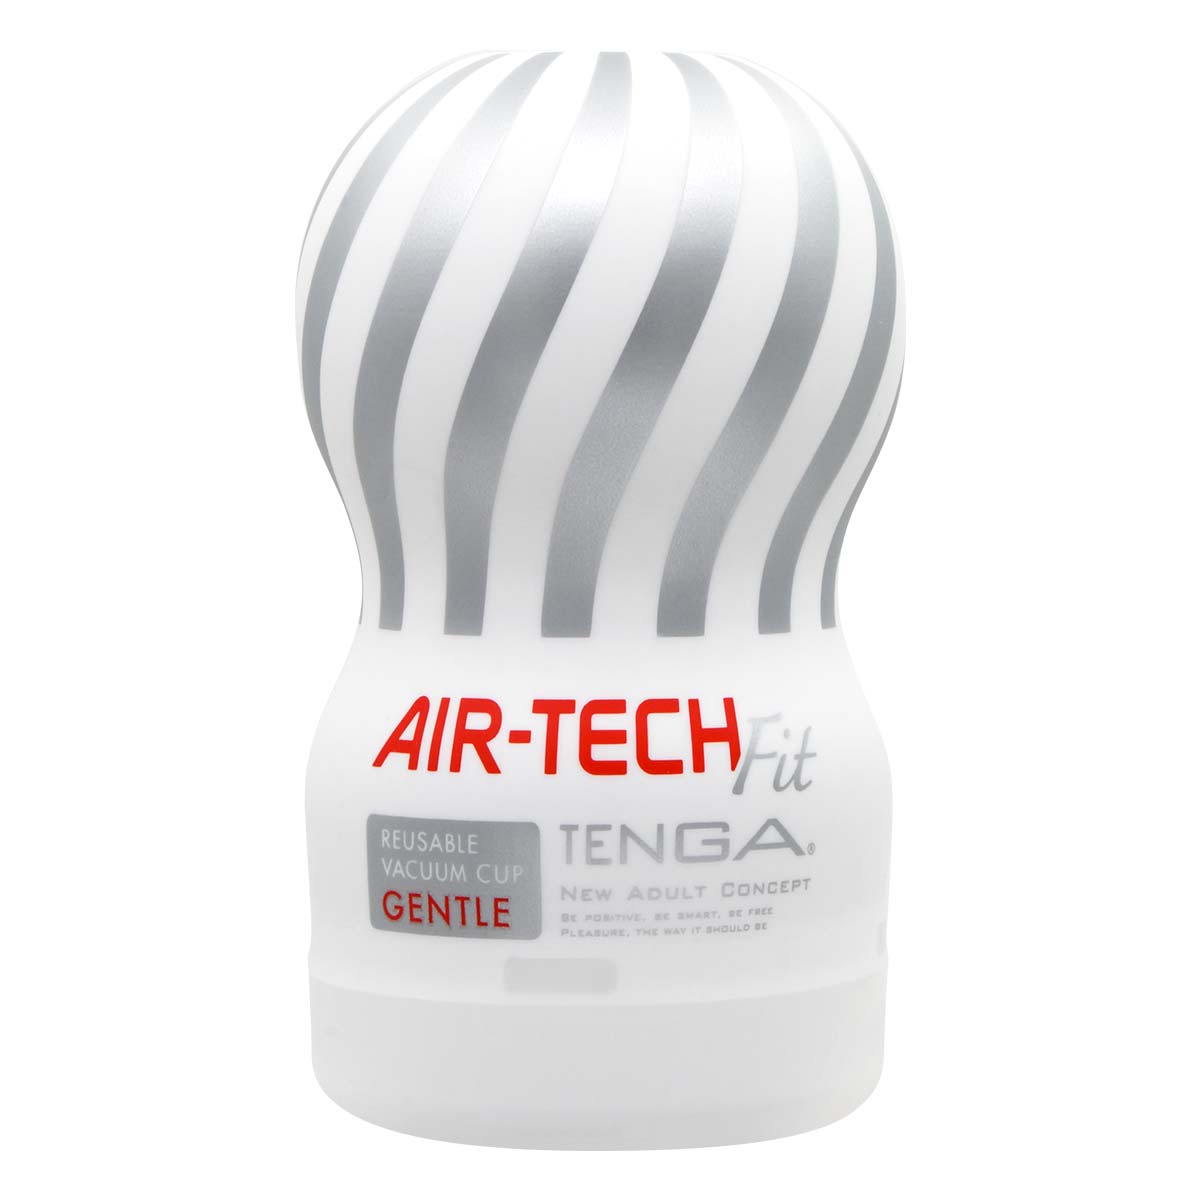 TENGA AIR-TECH Fit 重複使用型真空杯 柔軟型-thumb_2